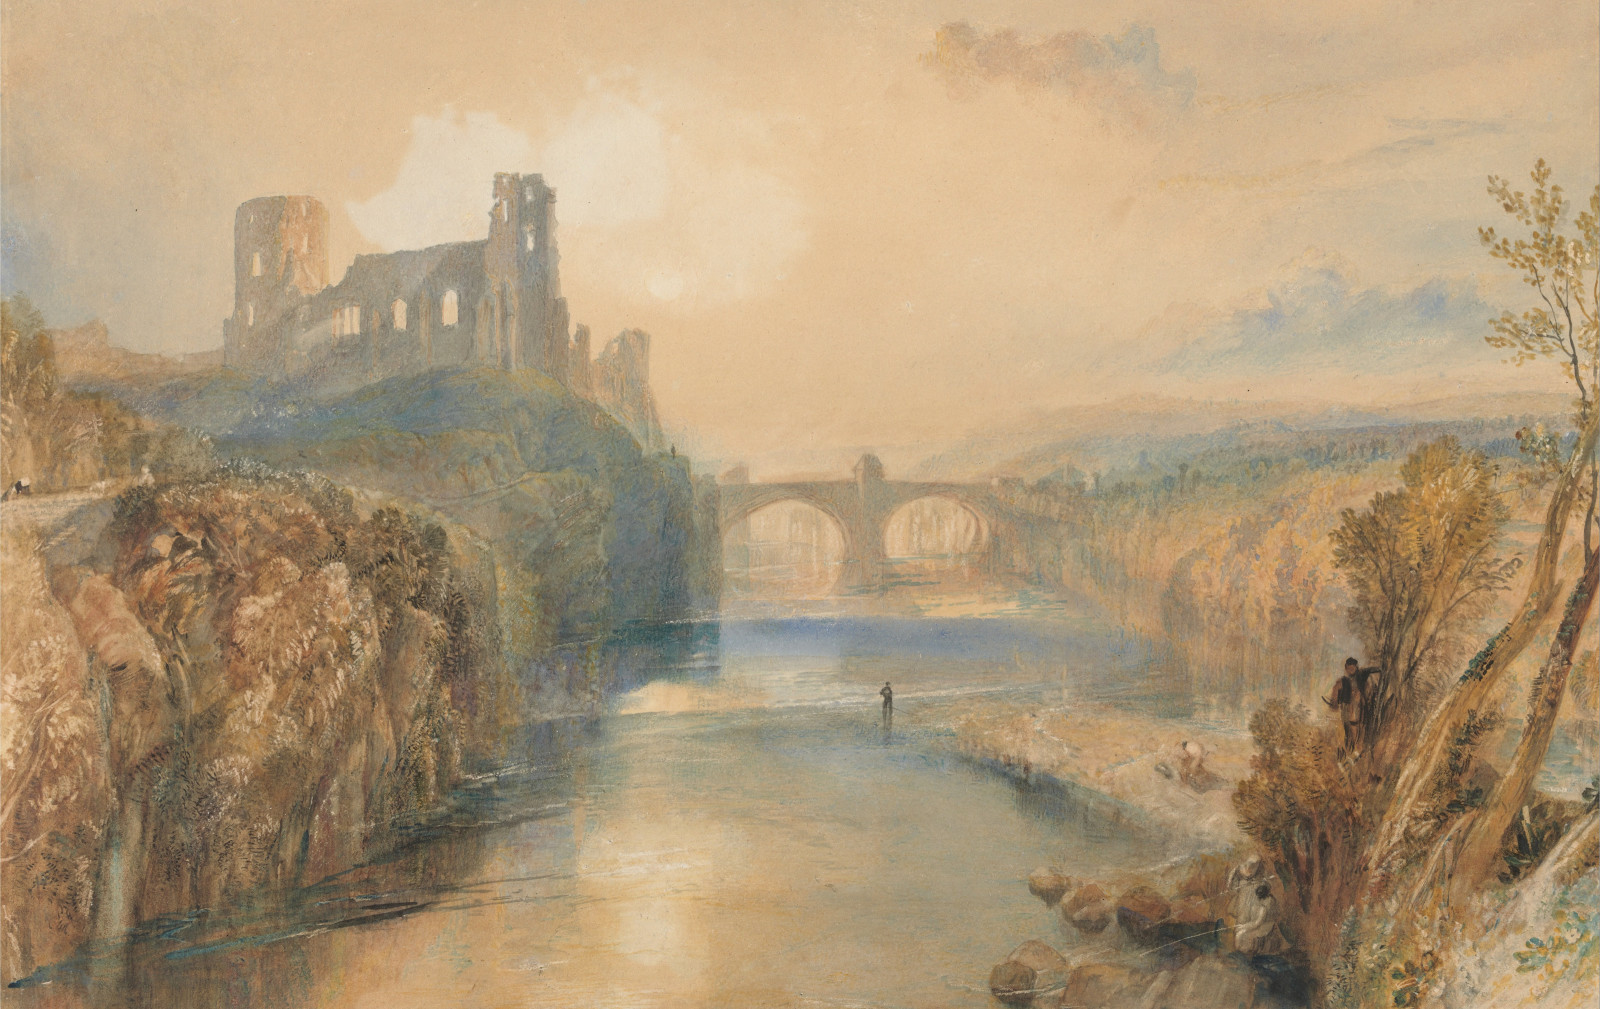 河, 景观, 图片, 桥, 威廉·特纳, 巴纳德城堡